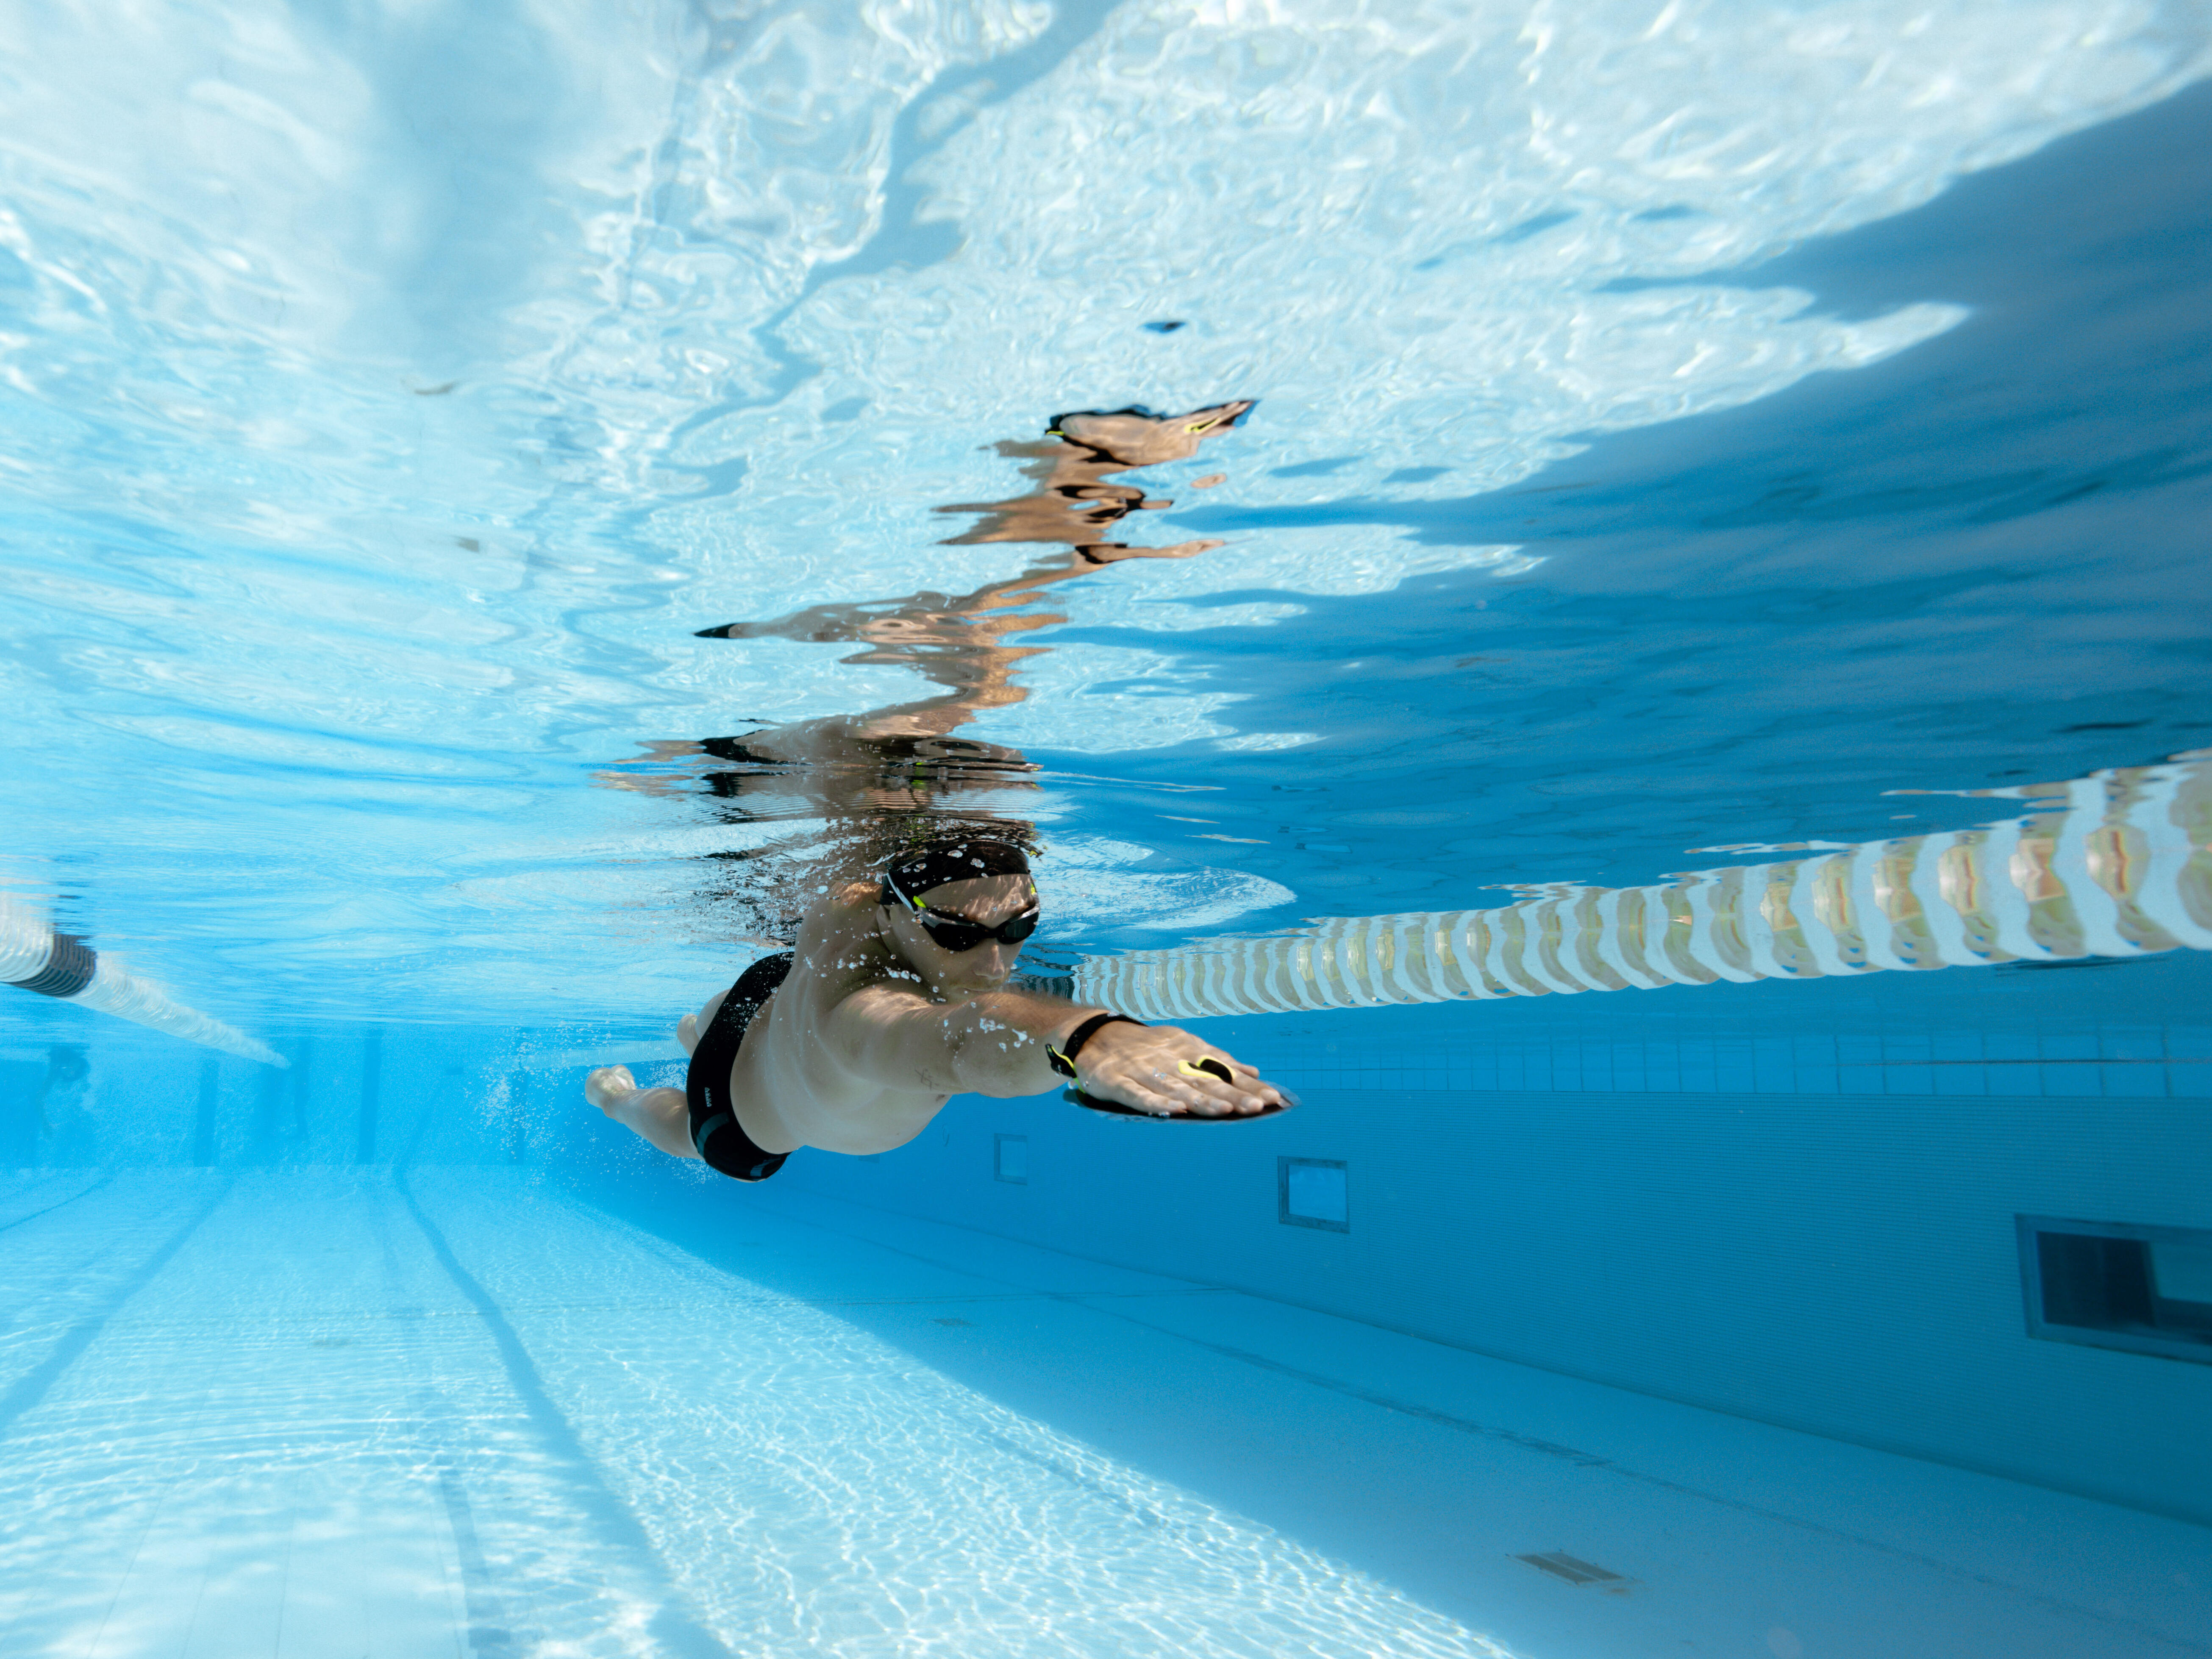 Plaquettes de natation — Wikipédia